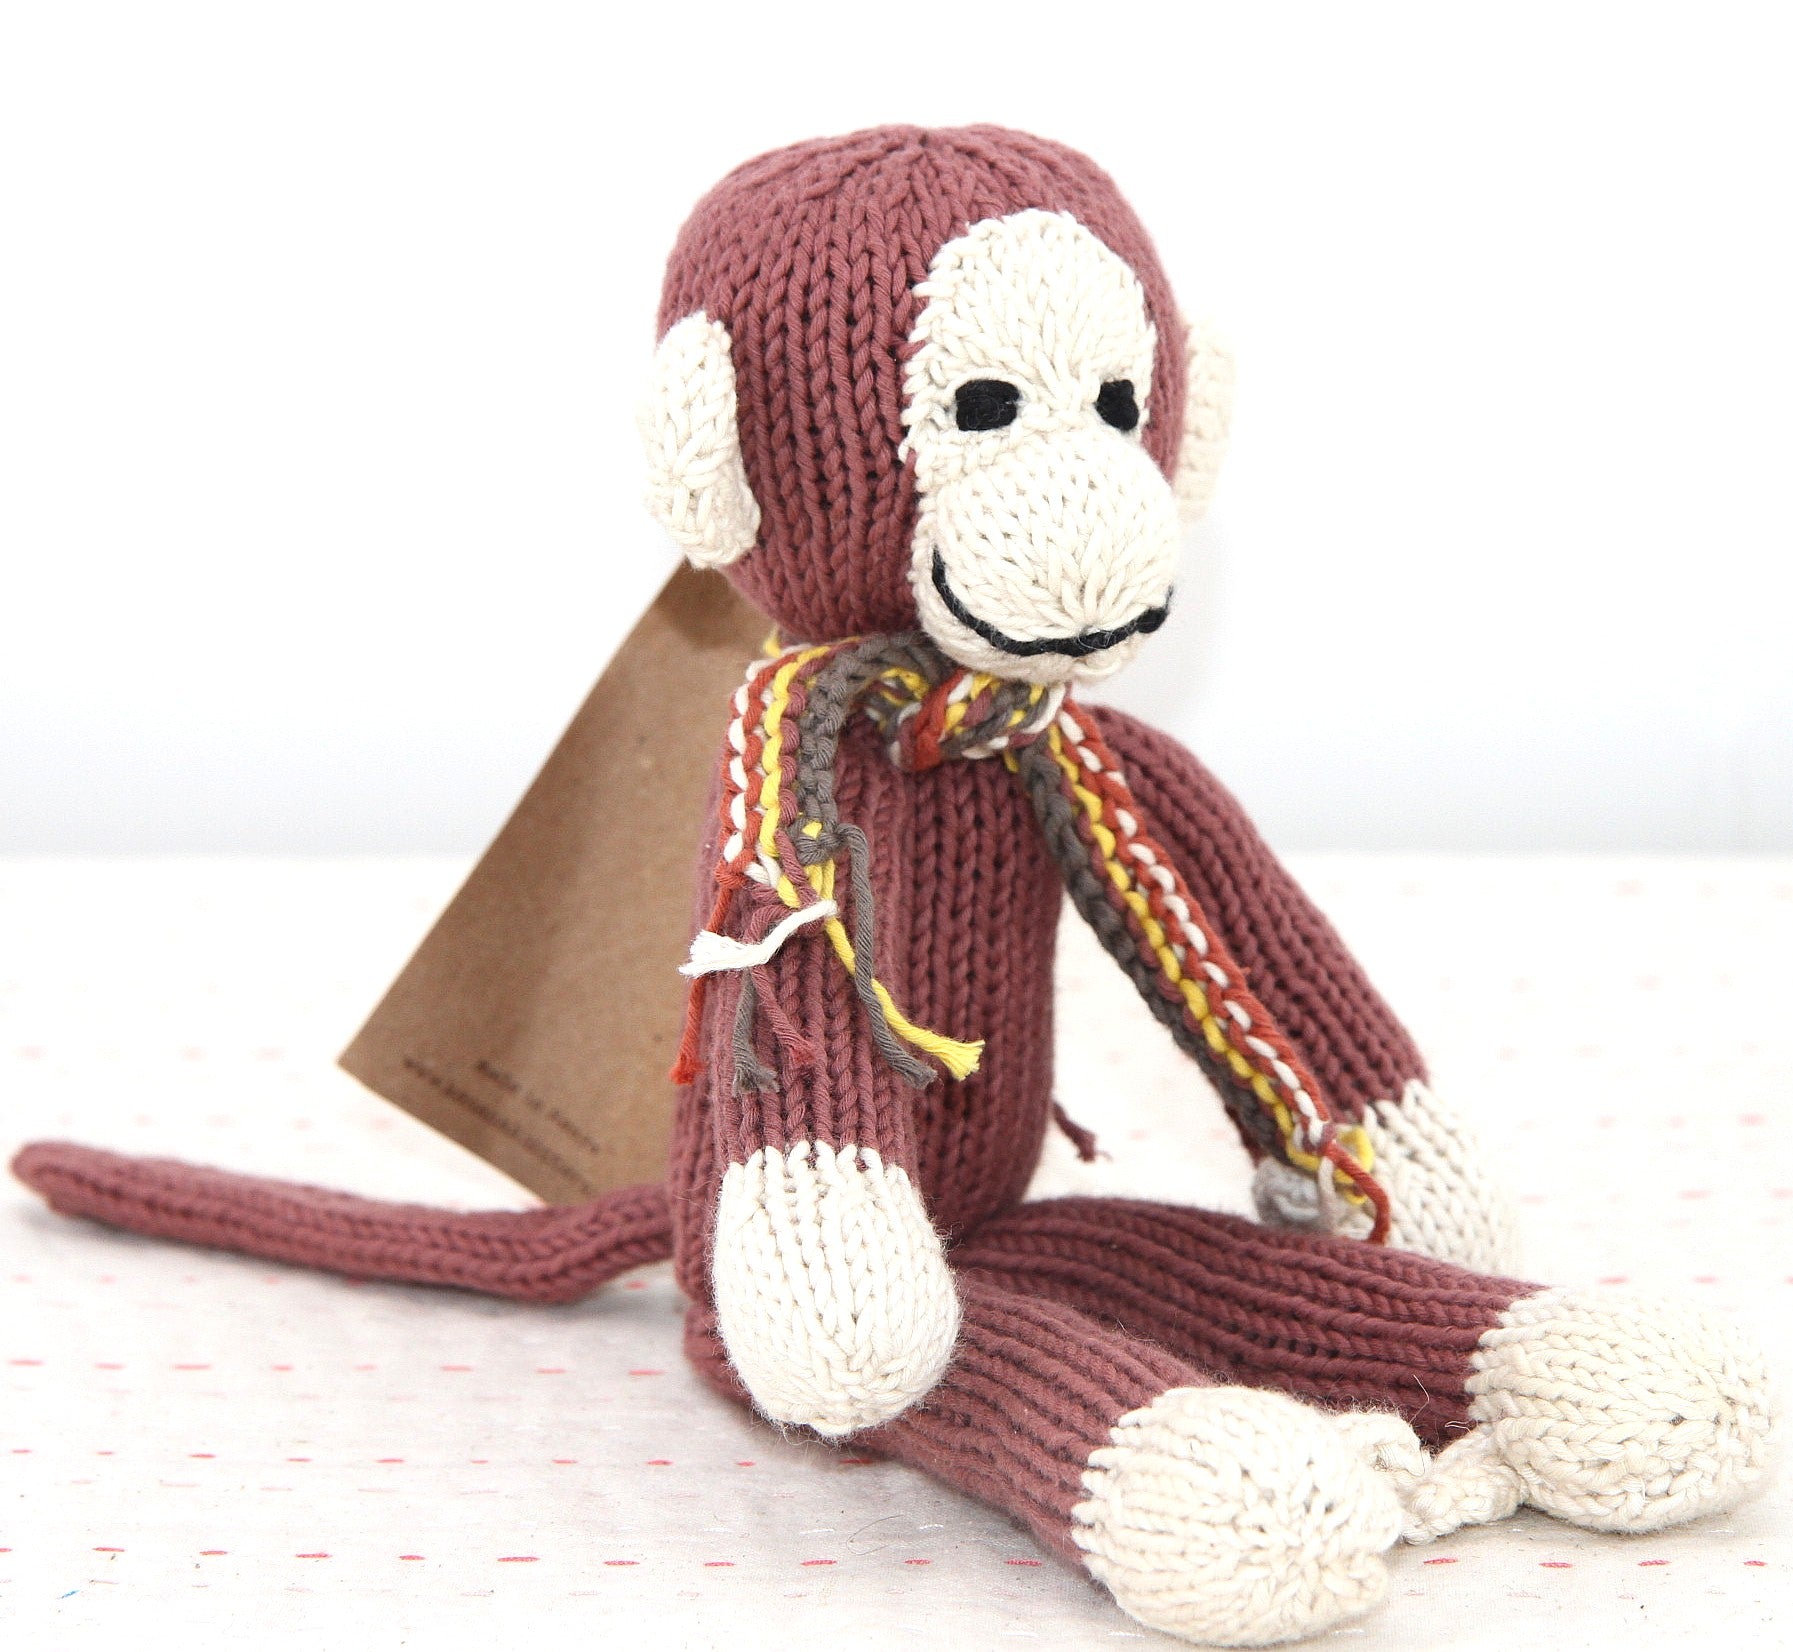 Doudou singe à longues pattes - Peluche éco-responsable en coton bio - JOSEPH - Studio Matongé